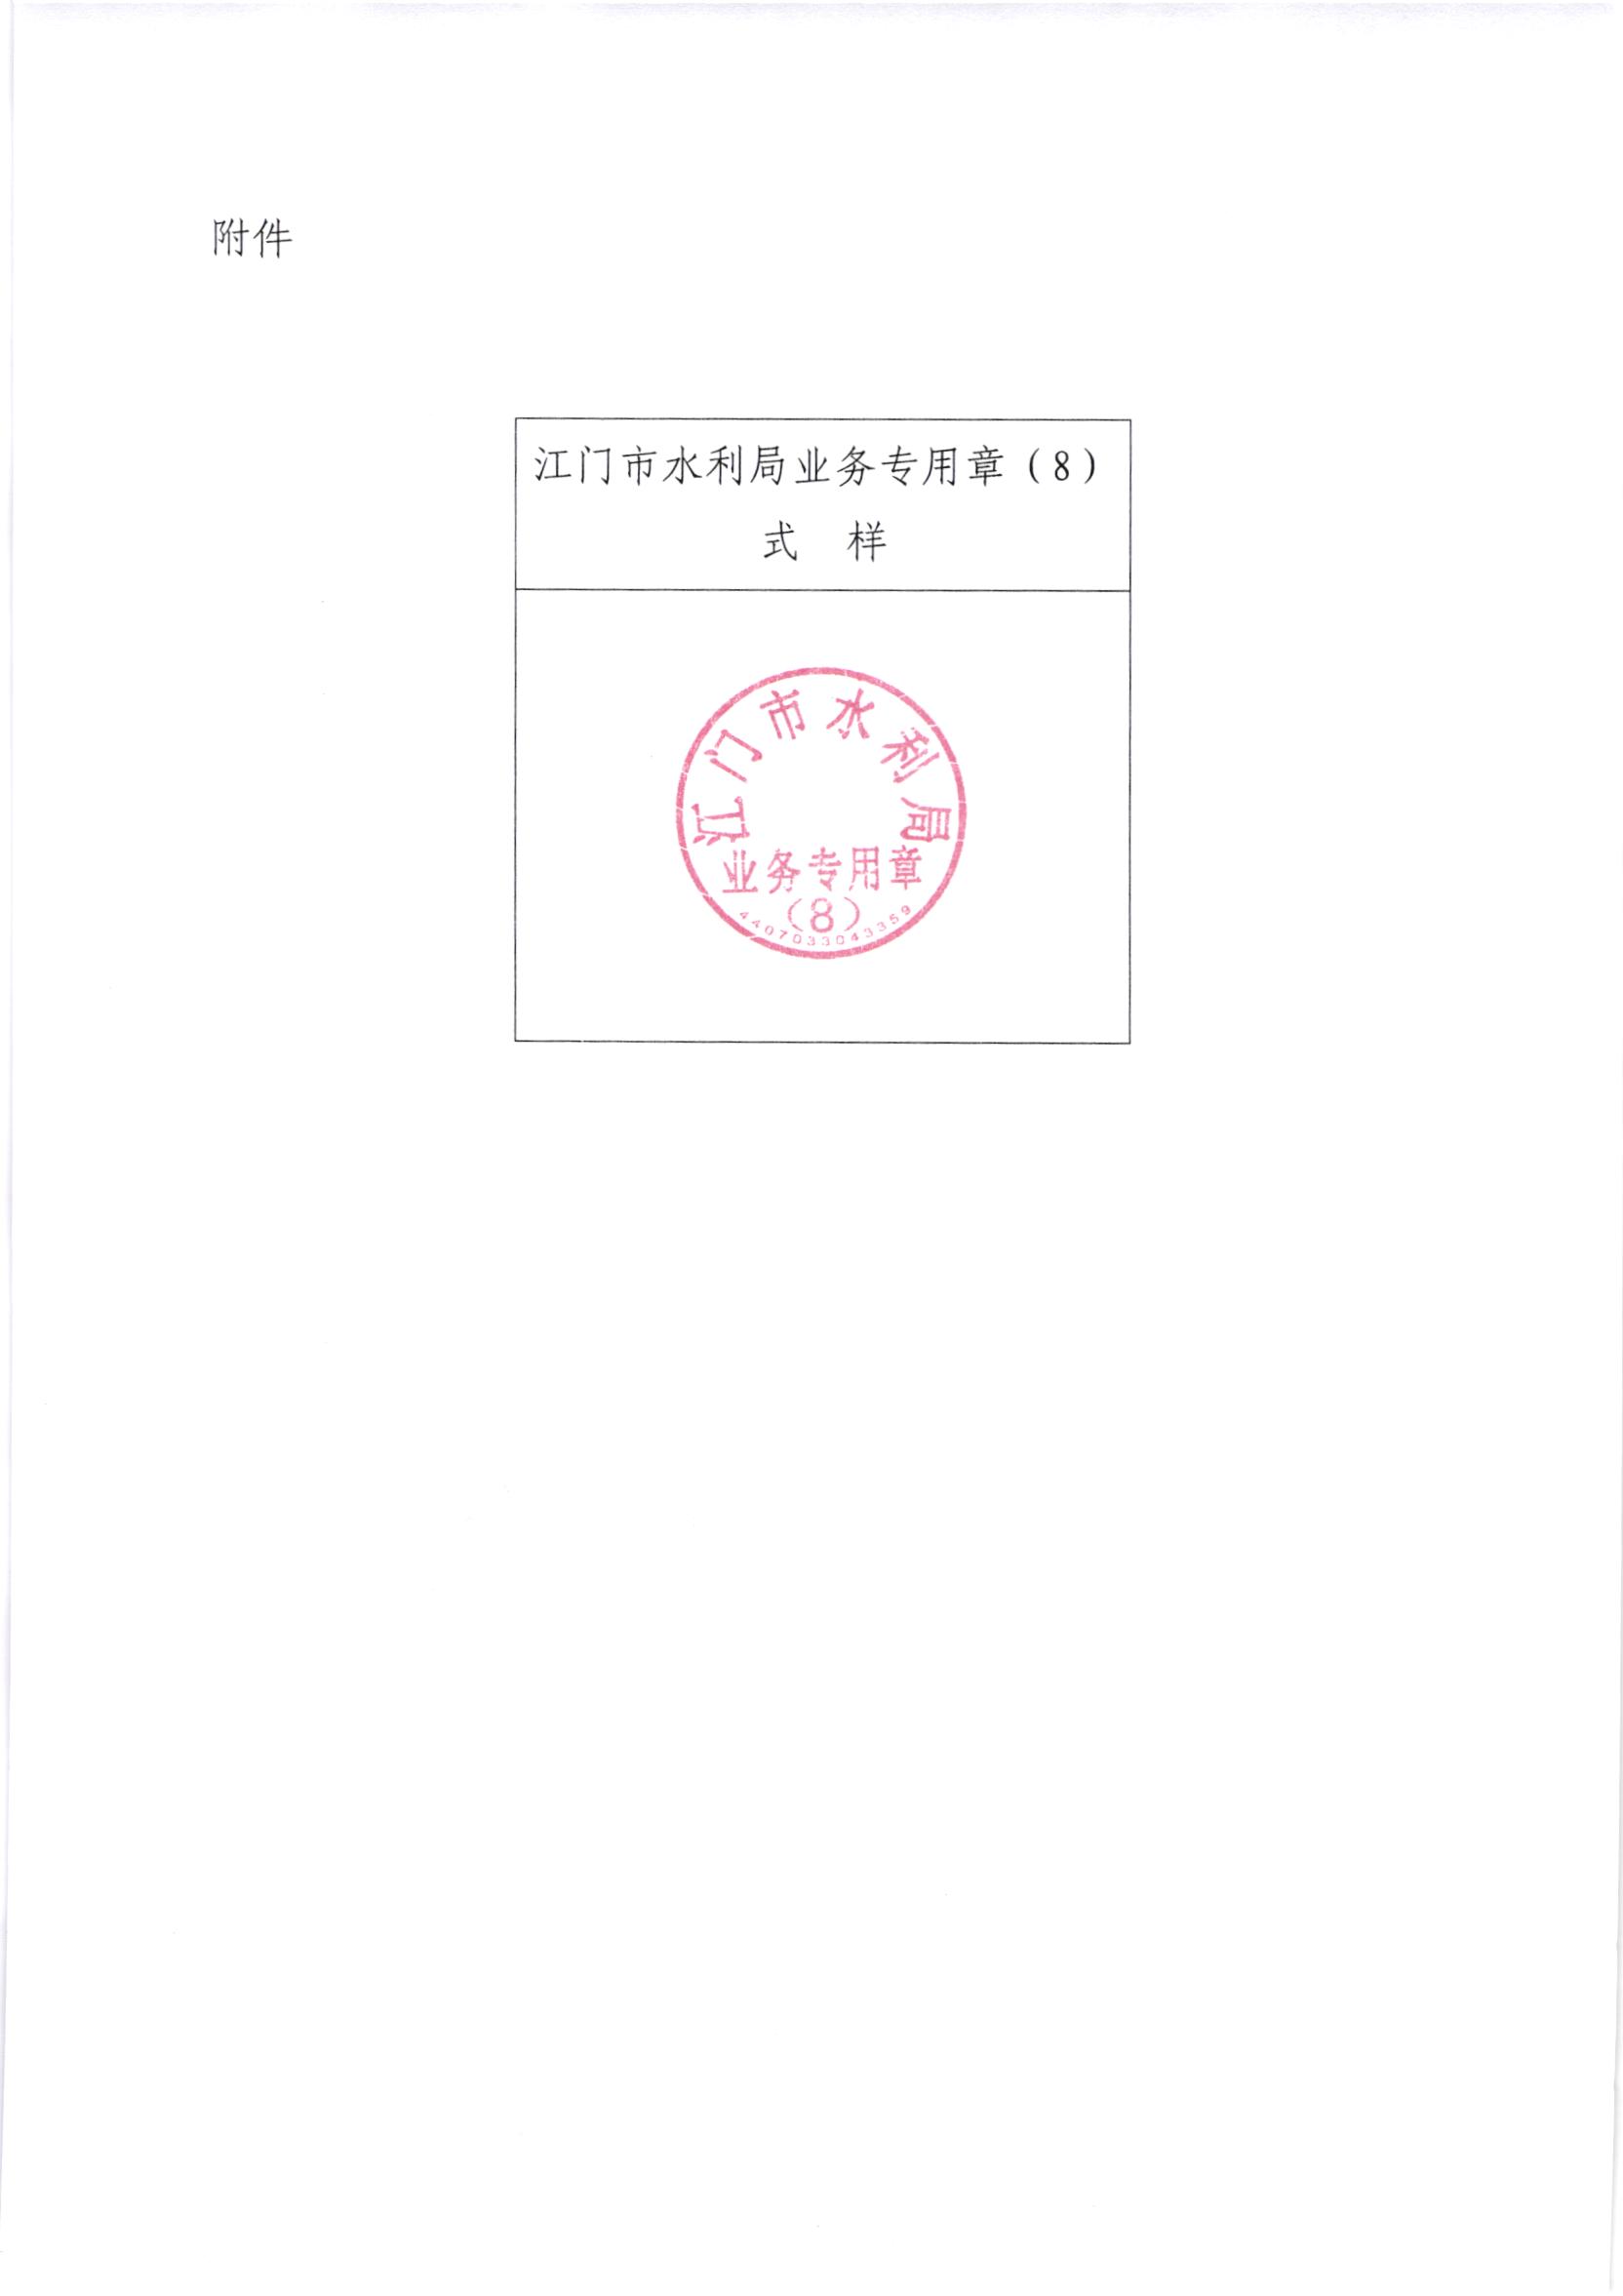 江水[2020]264号_关于启用江门市水利局业务专用印章的通知_002.jpg